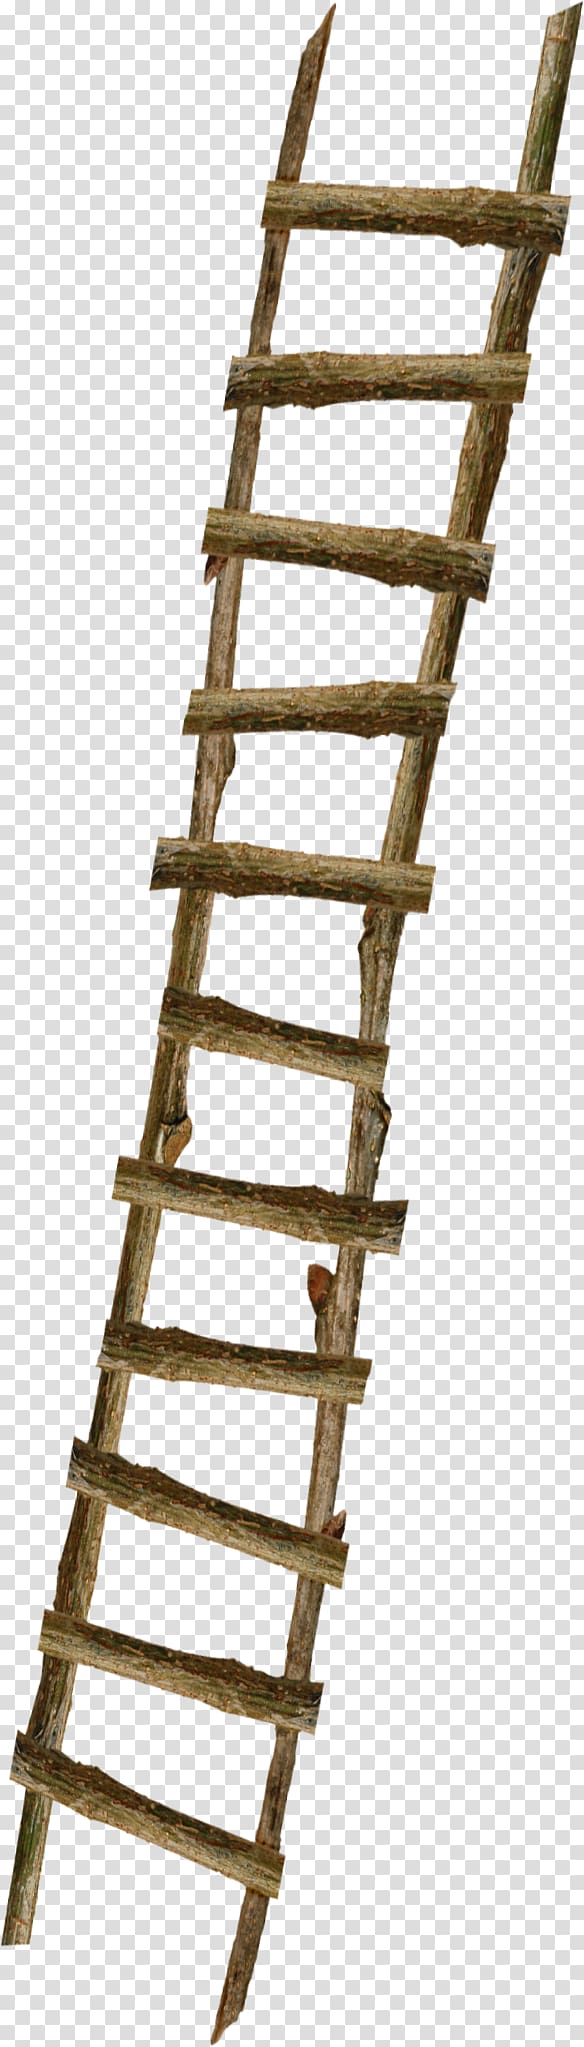 Du Iz Tak? Ladder Wood Stairs, Floating decorative wooden ladder transparent background PNG clipart